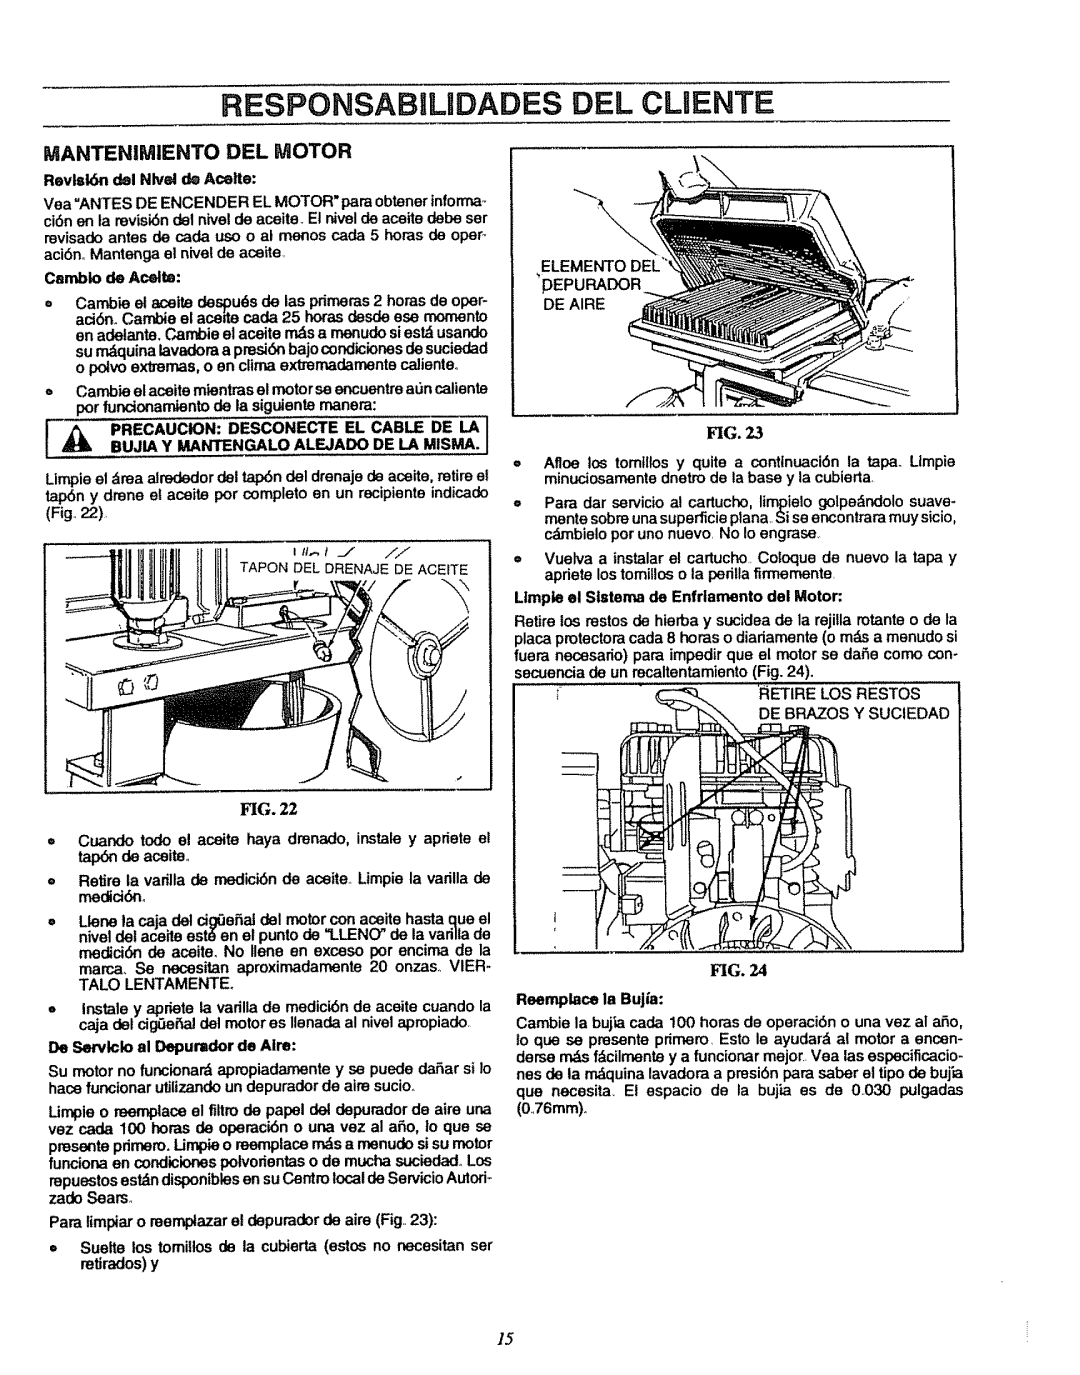 Sears 580.7515 manual RESPONSABlUDADES DEL CLUENTE, Mantenimiento Del Motor, Fig 